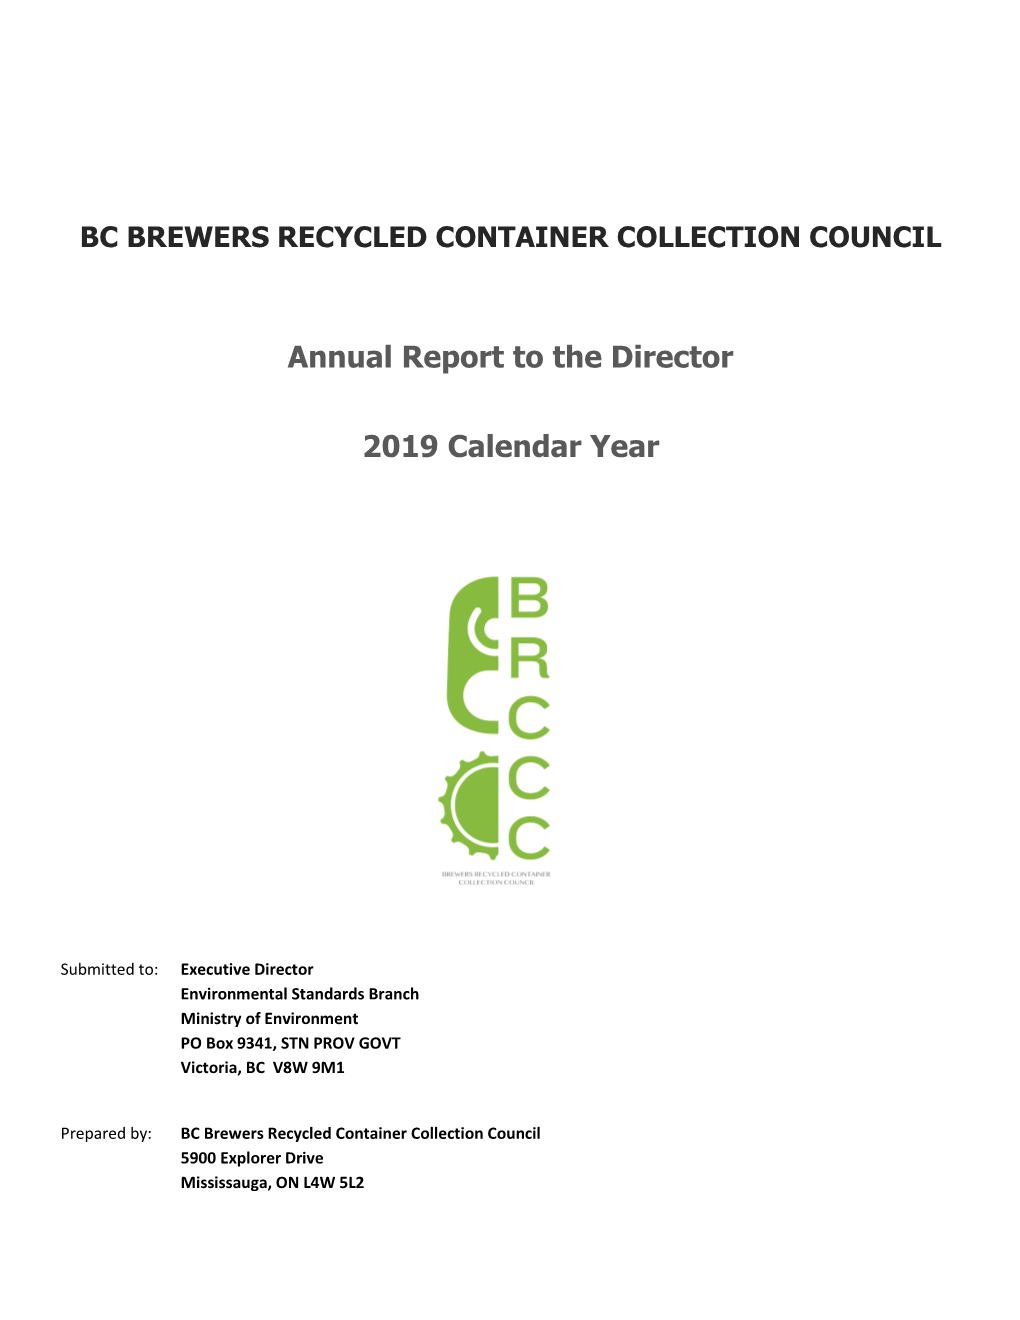 2019 BRCCC Annual Report